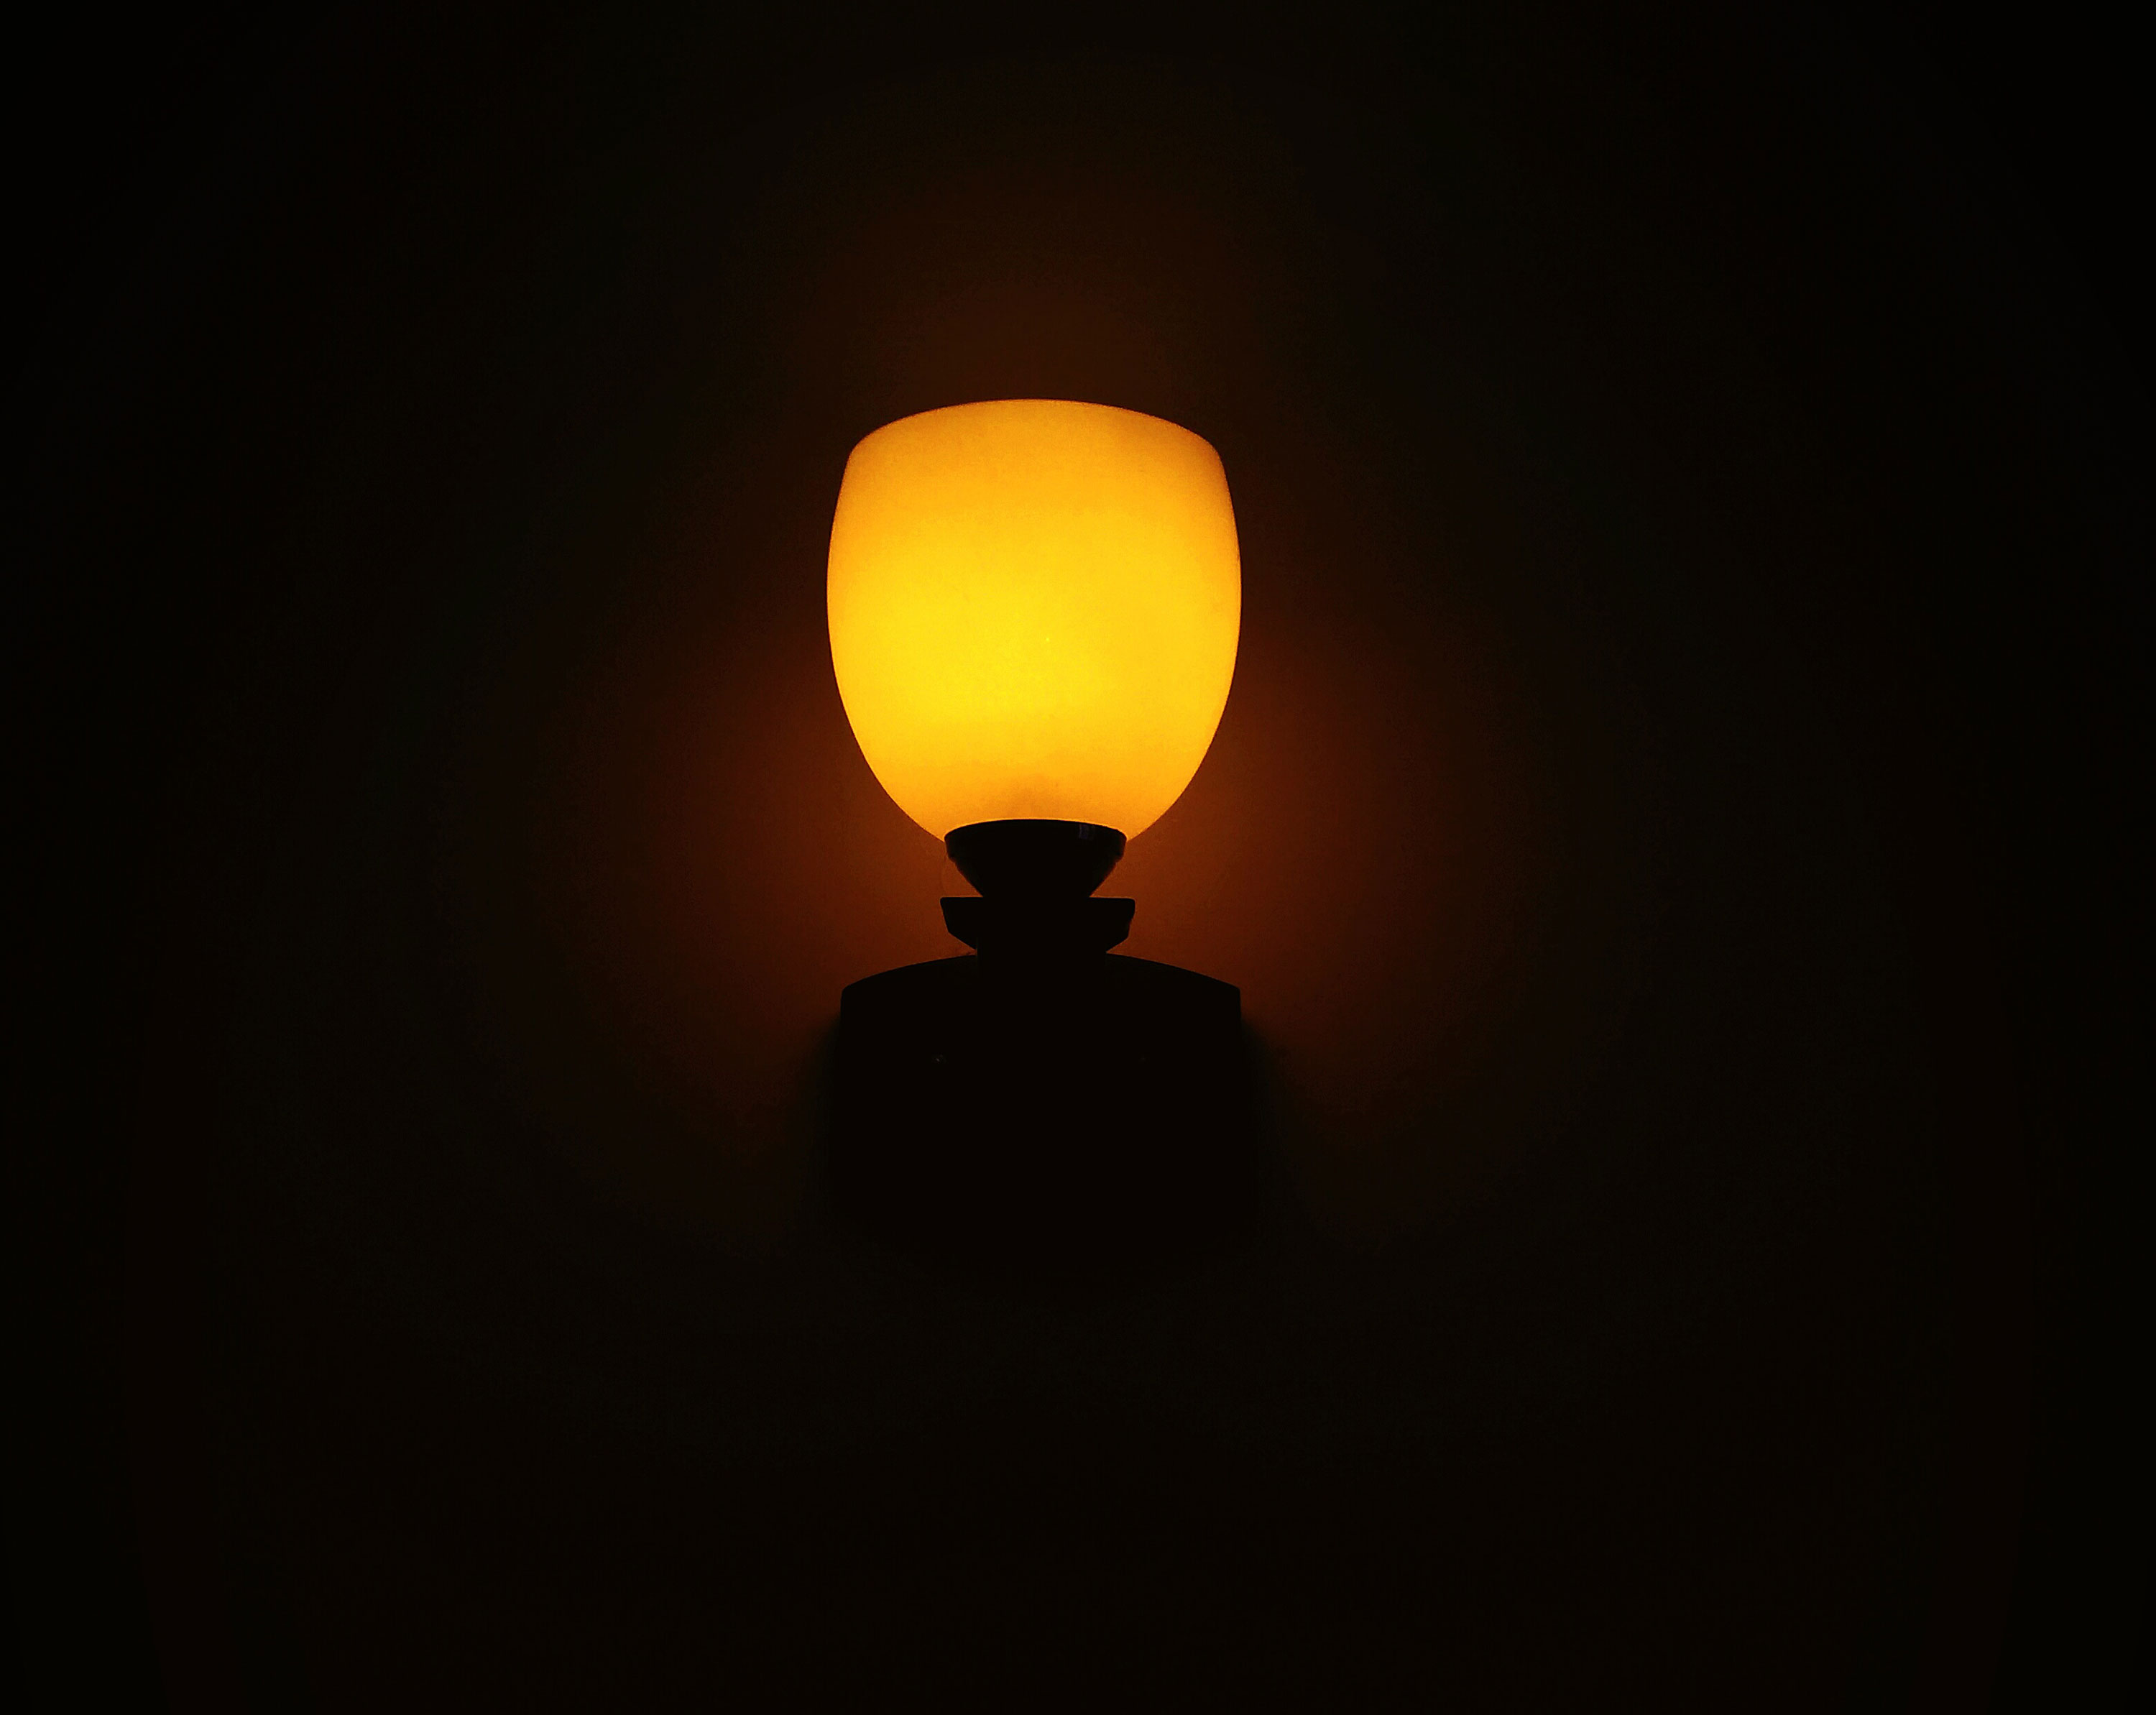 Orange Night lamp glowing on wall